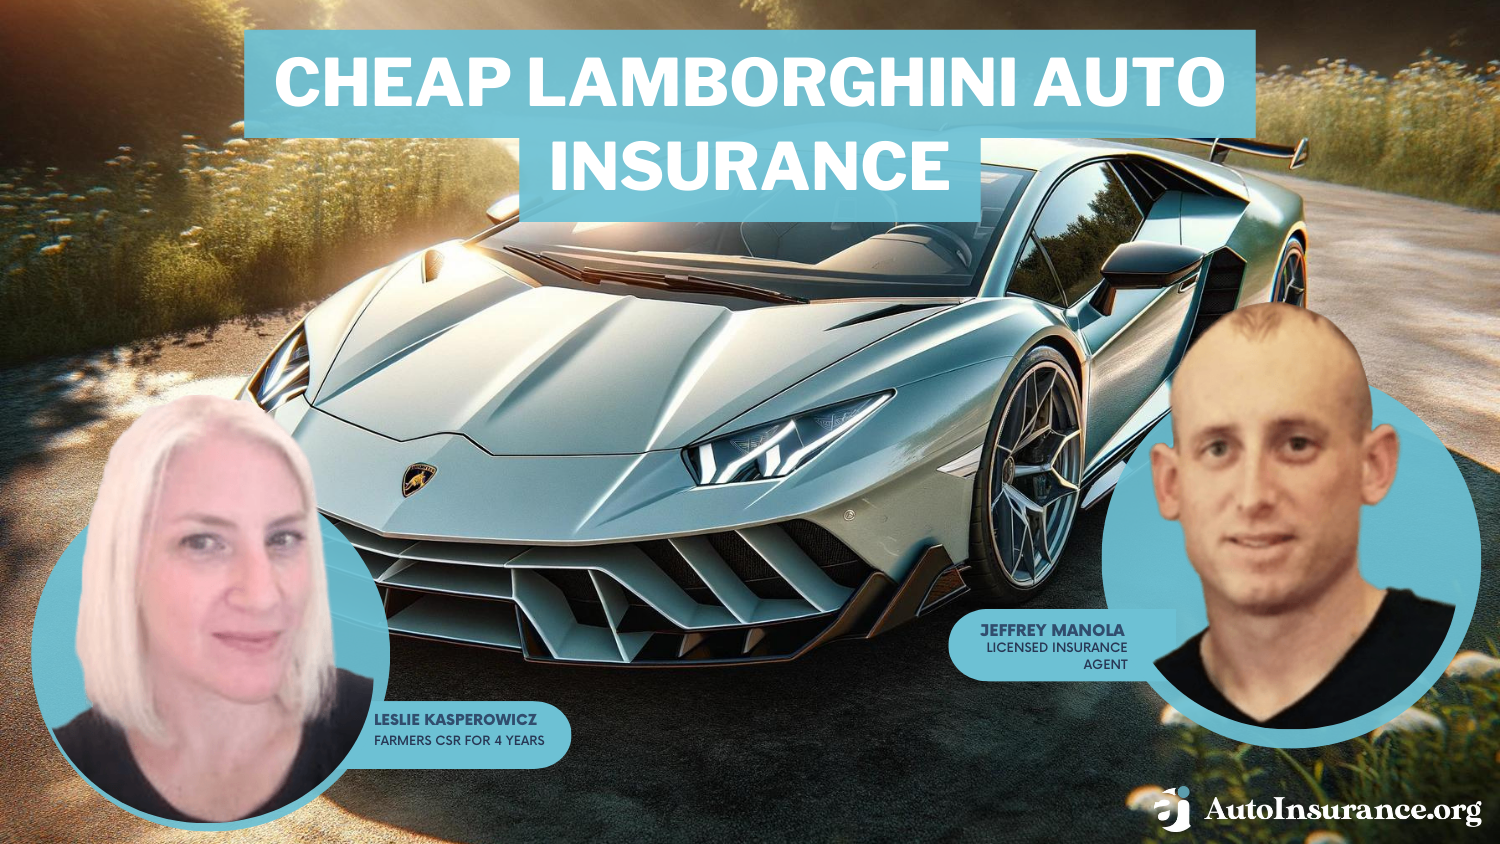 Cheap Lamborghini Auto Insurance: Geico, AAA, State Farm